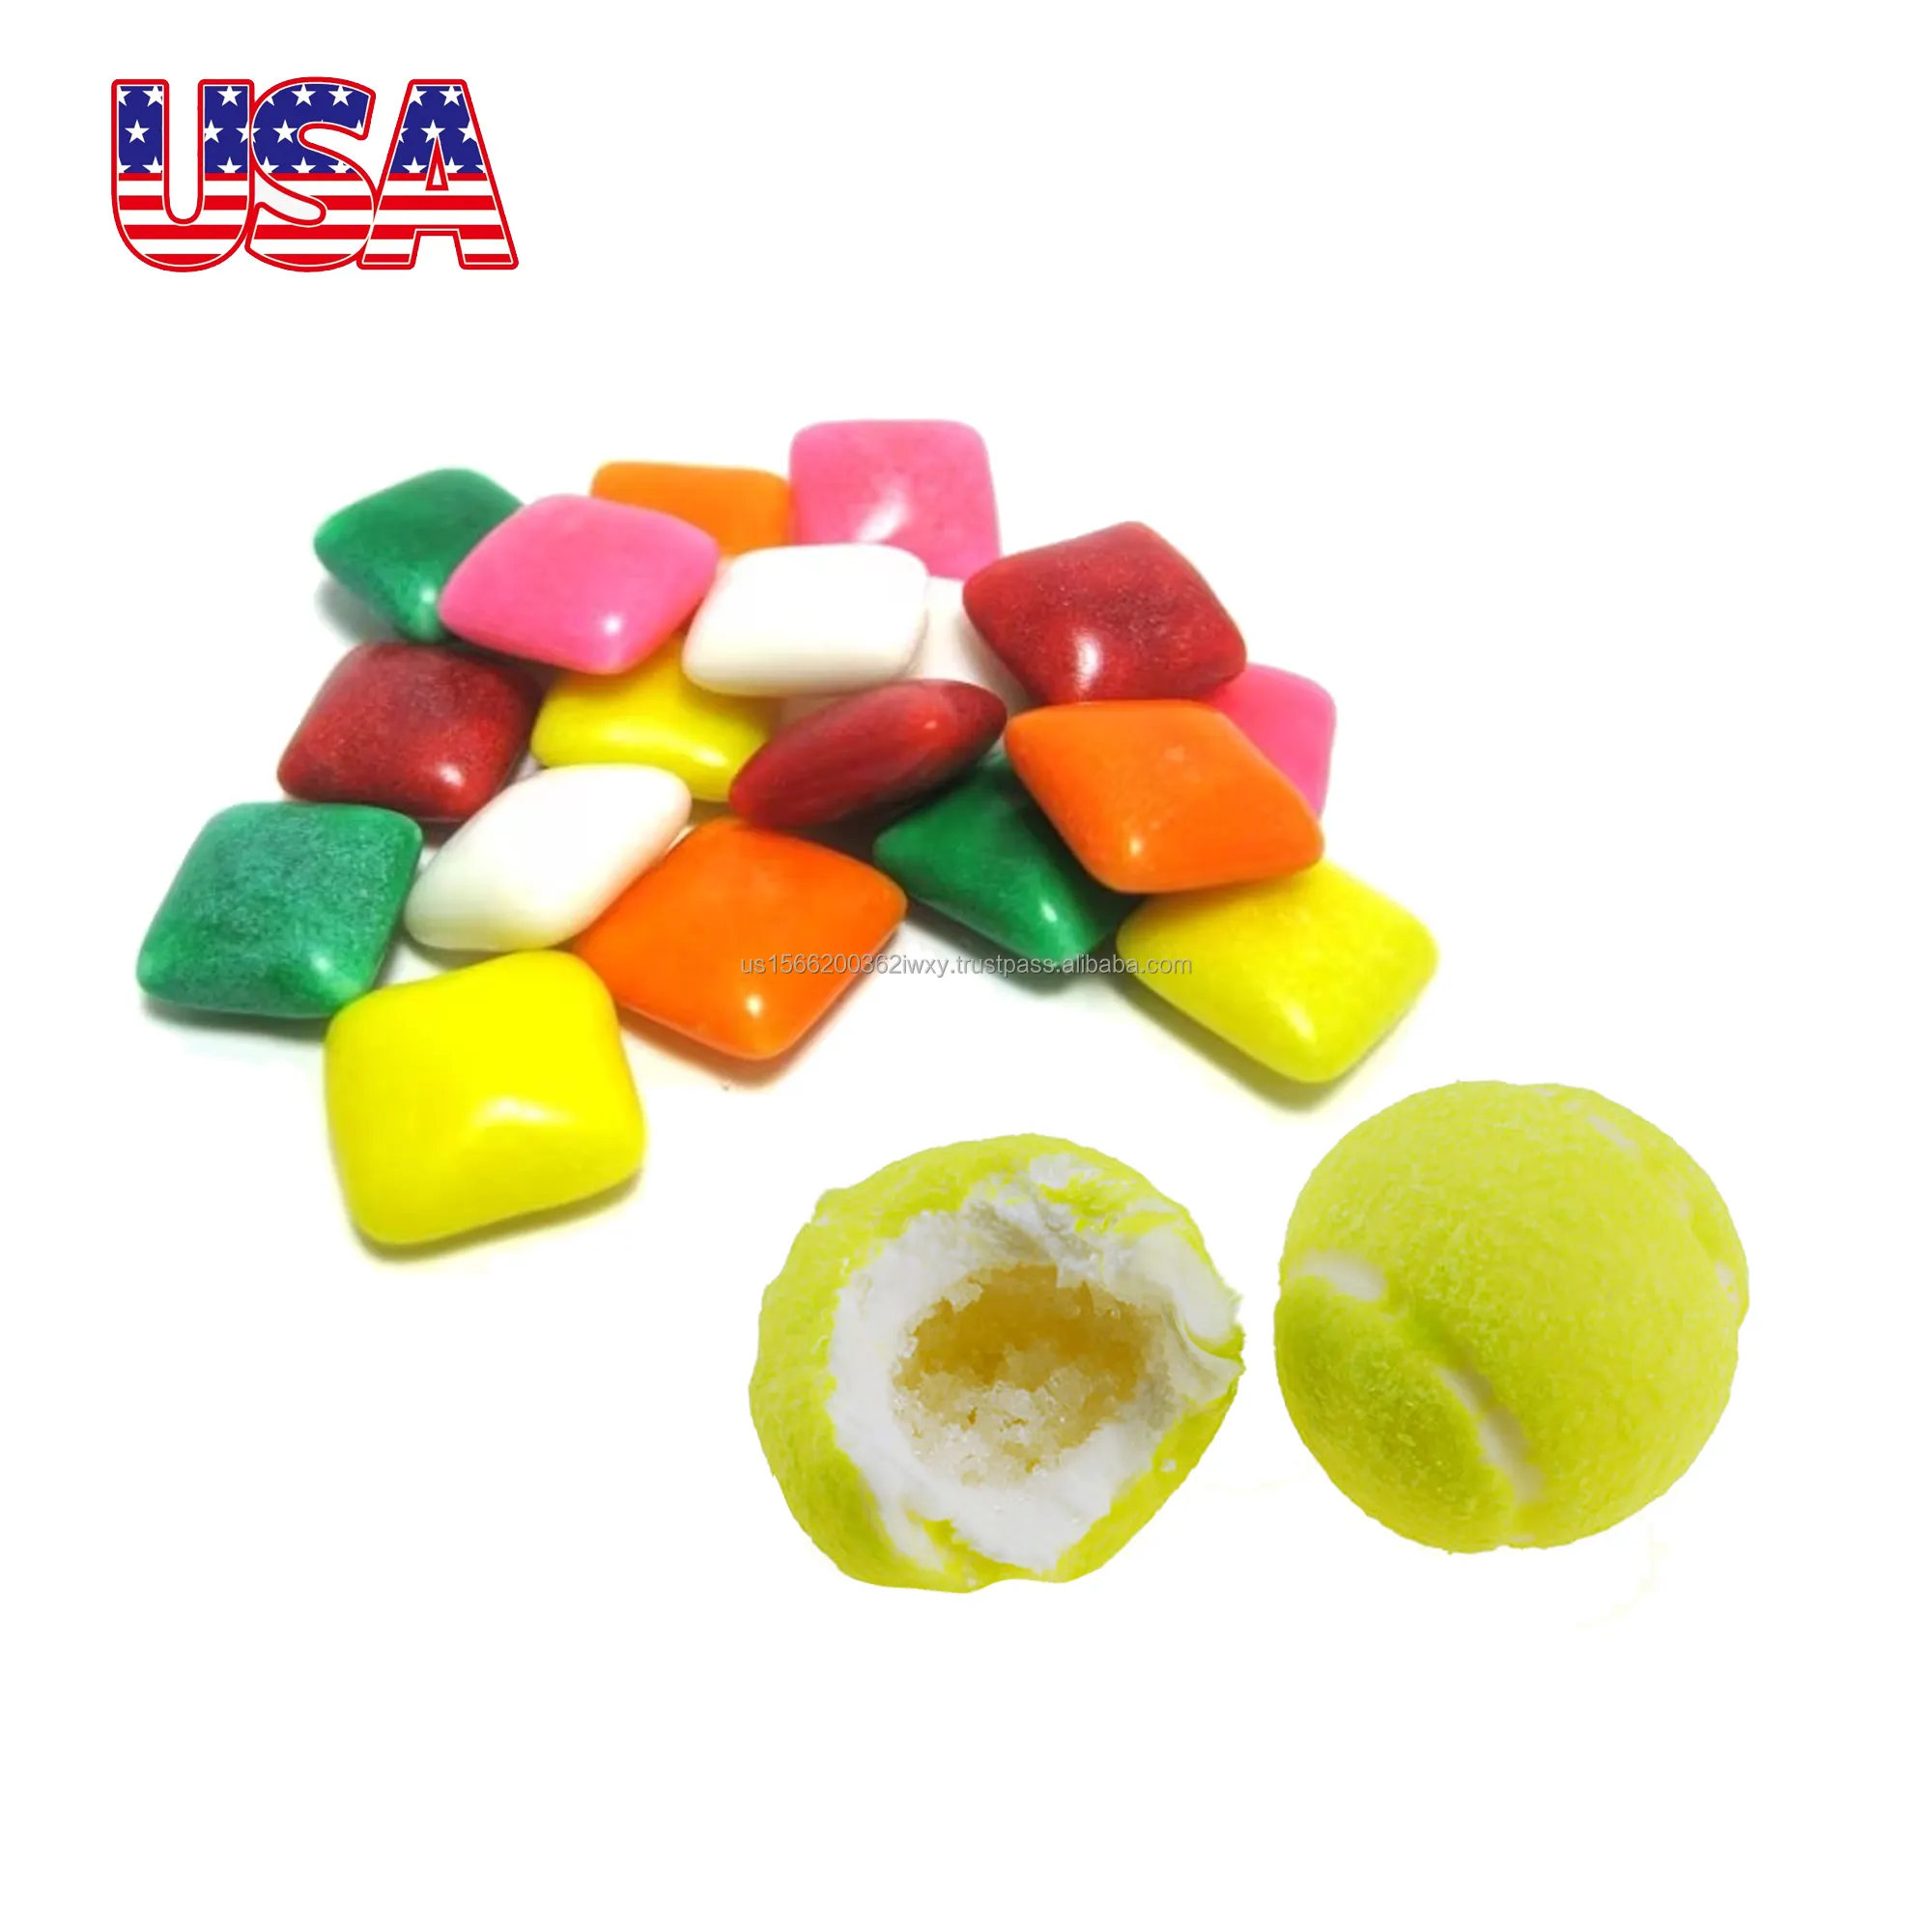 Gum balls making machine processing machine chew gum production line for bubble gum manufacturer